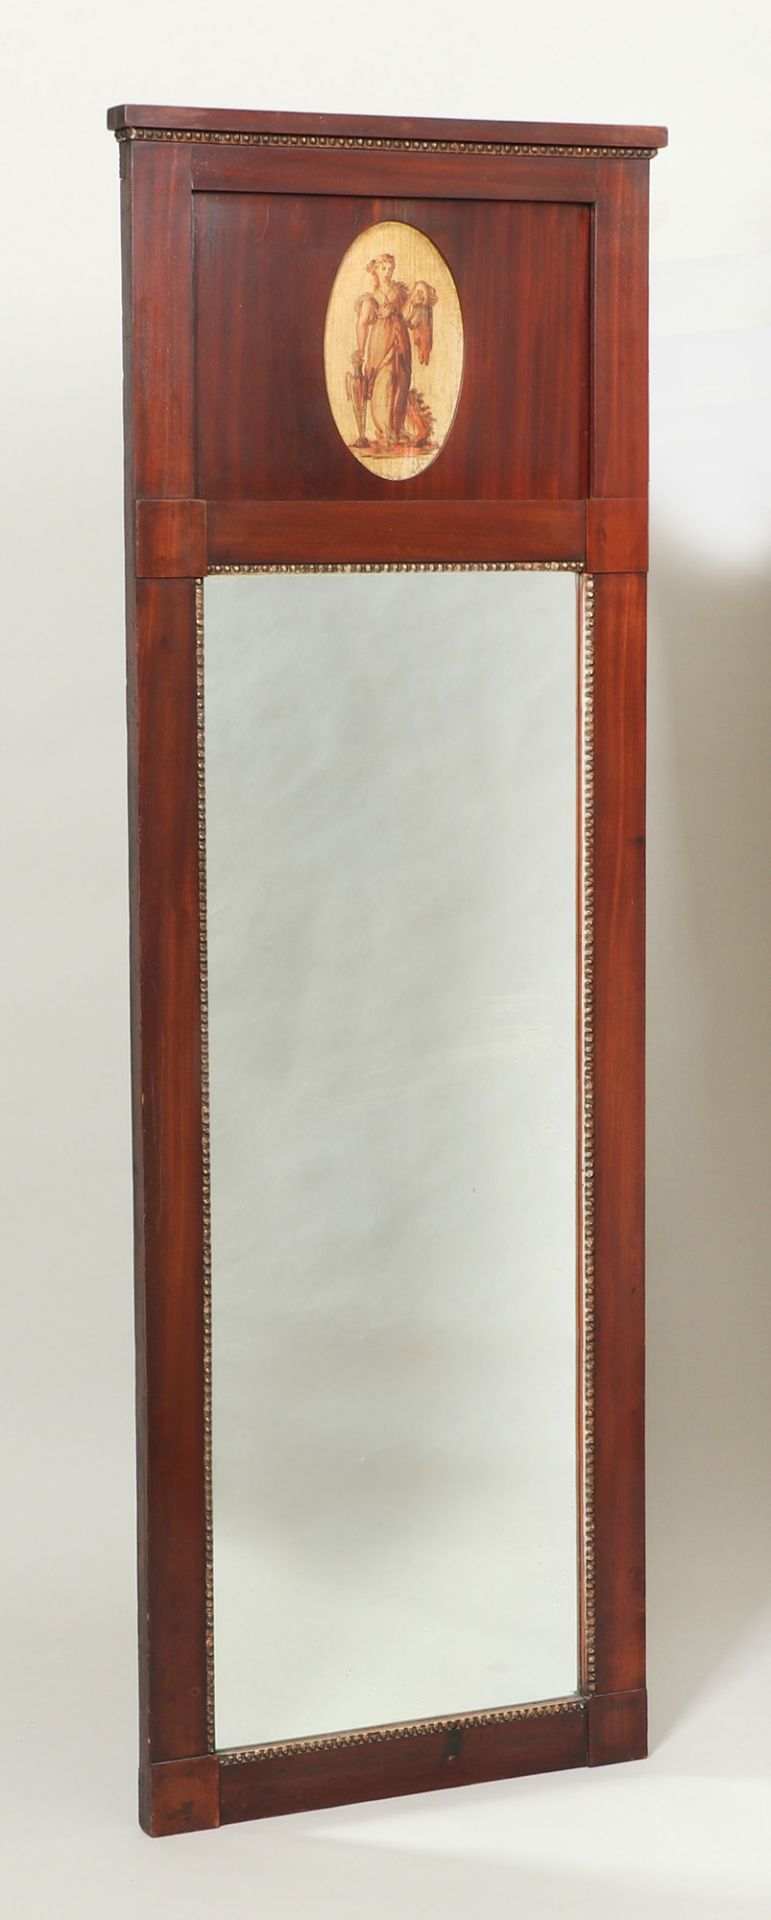 Spiegel, 19.Jh., Mahagoniholzmit Perlstab, vergoldet, Vignette mit Dame, 167 x 55 cm, Gebra